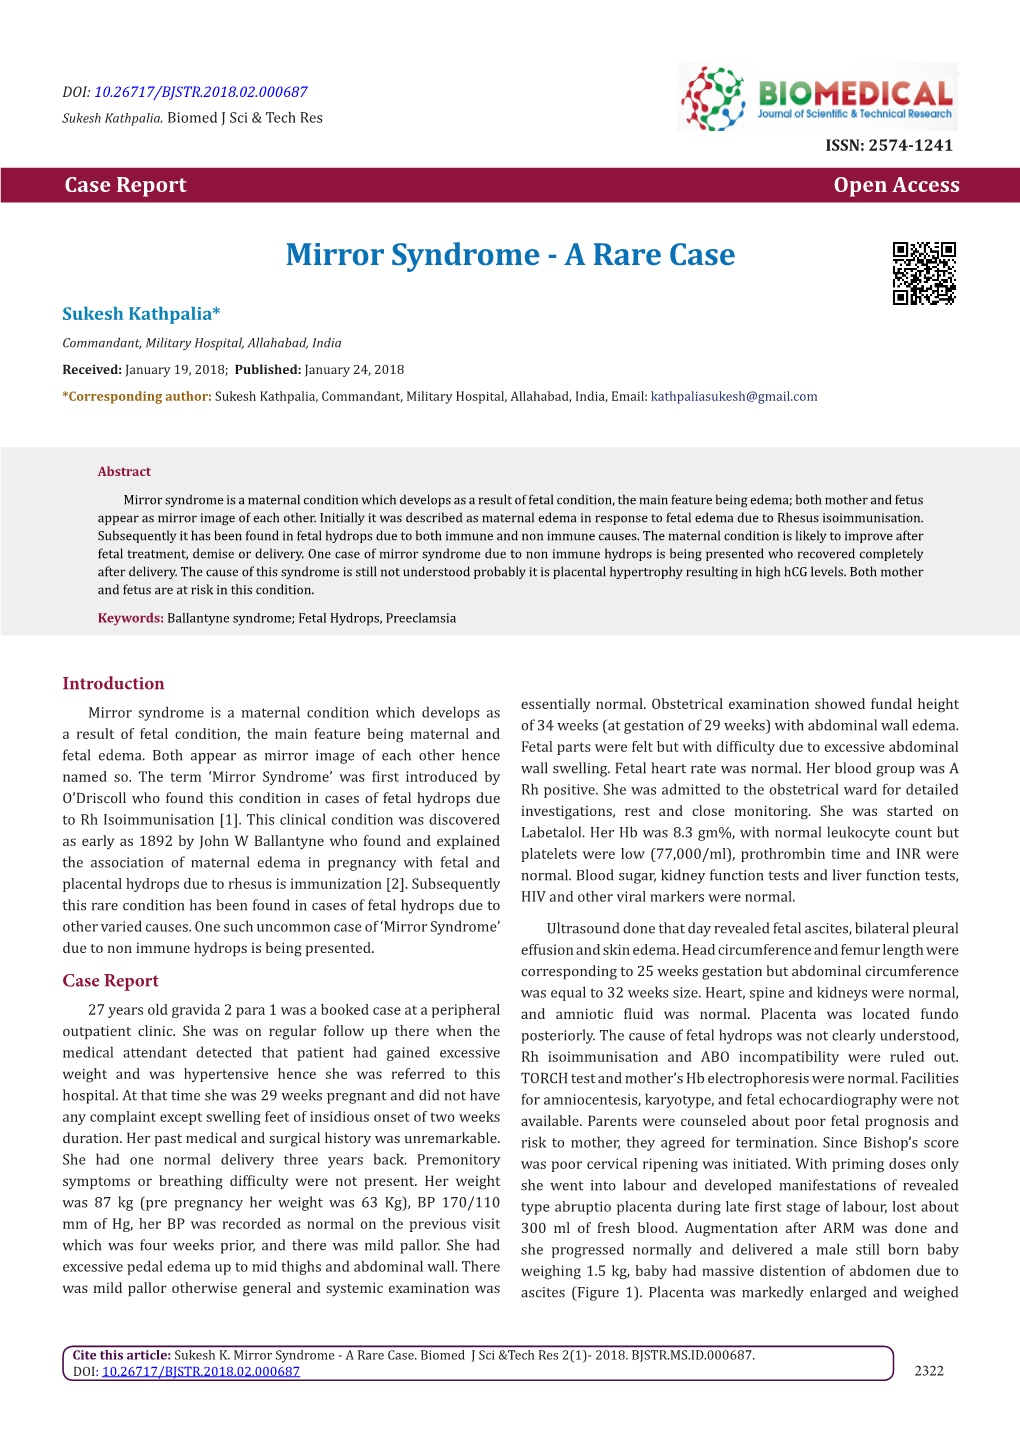 Mirror Syndrome - a Rare Case